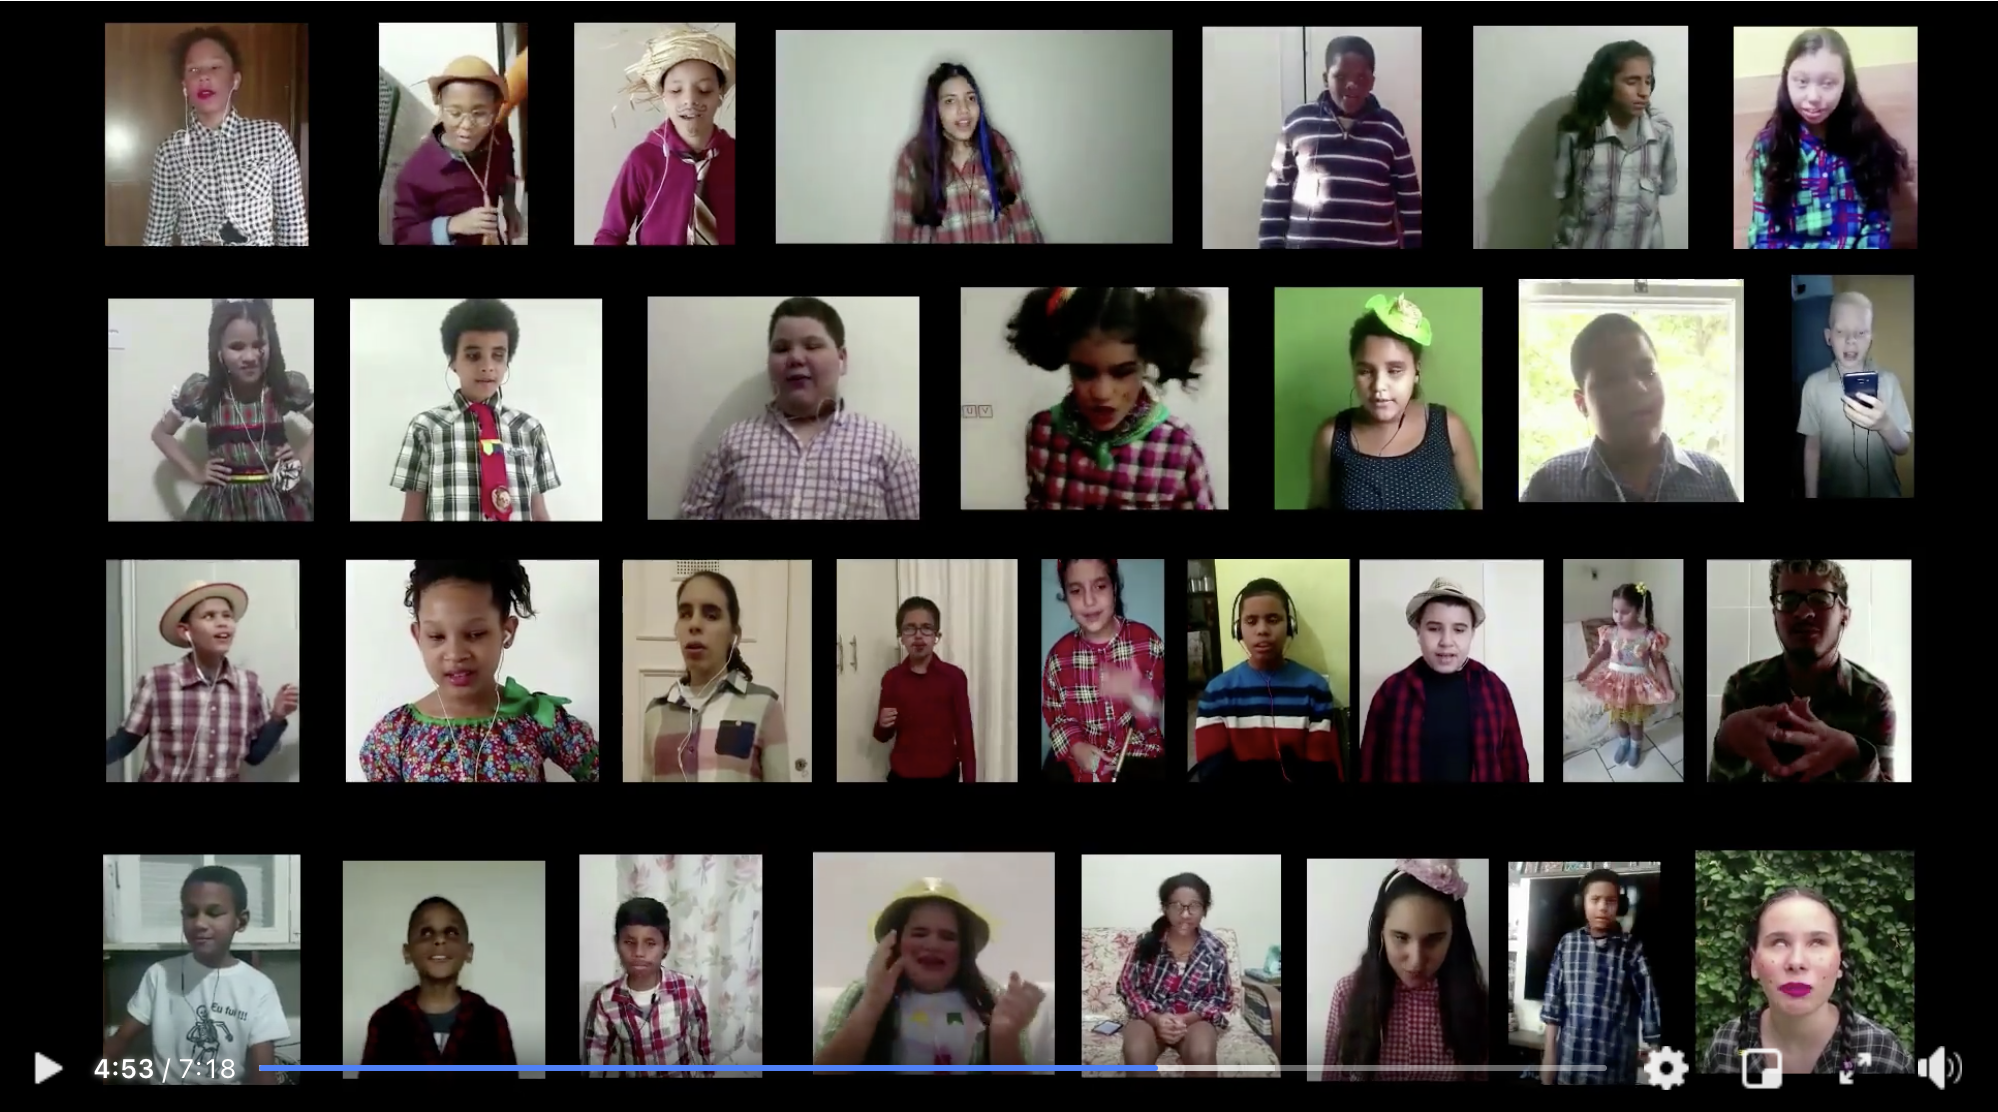 Tela de computador logado em formato de videoconferência na qua aparecem as imagens de31 crianças e adolescentes vestidas com trajes juninos e sorridentes.